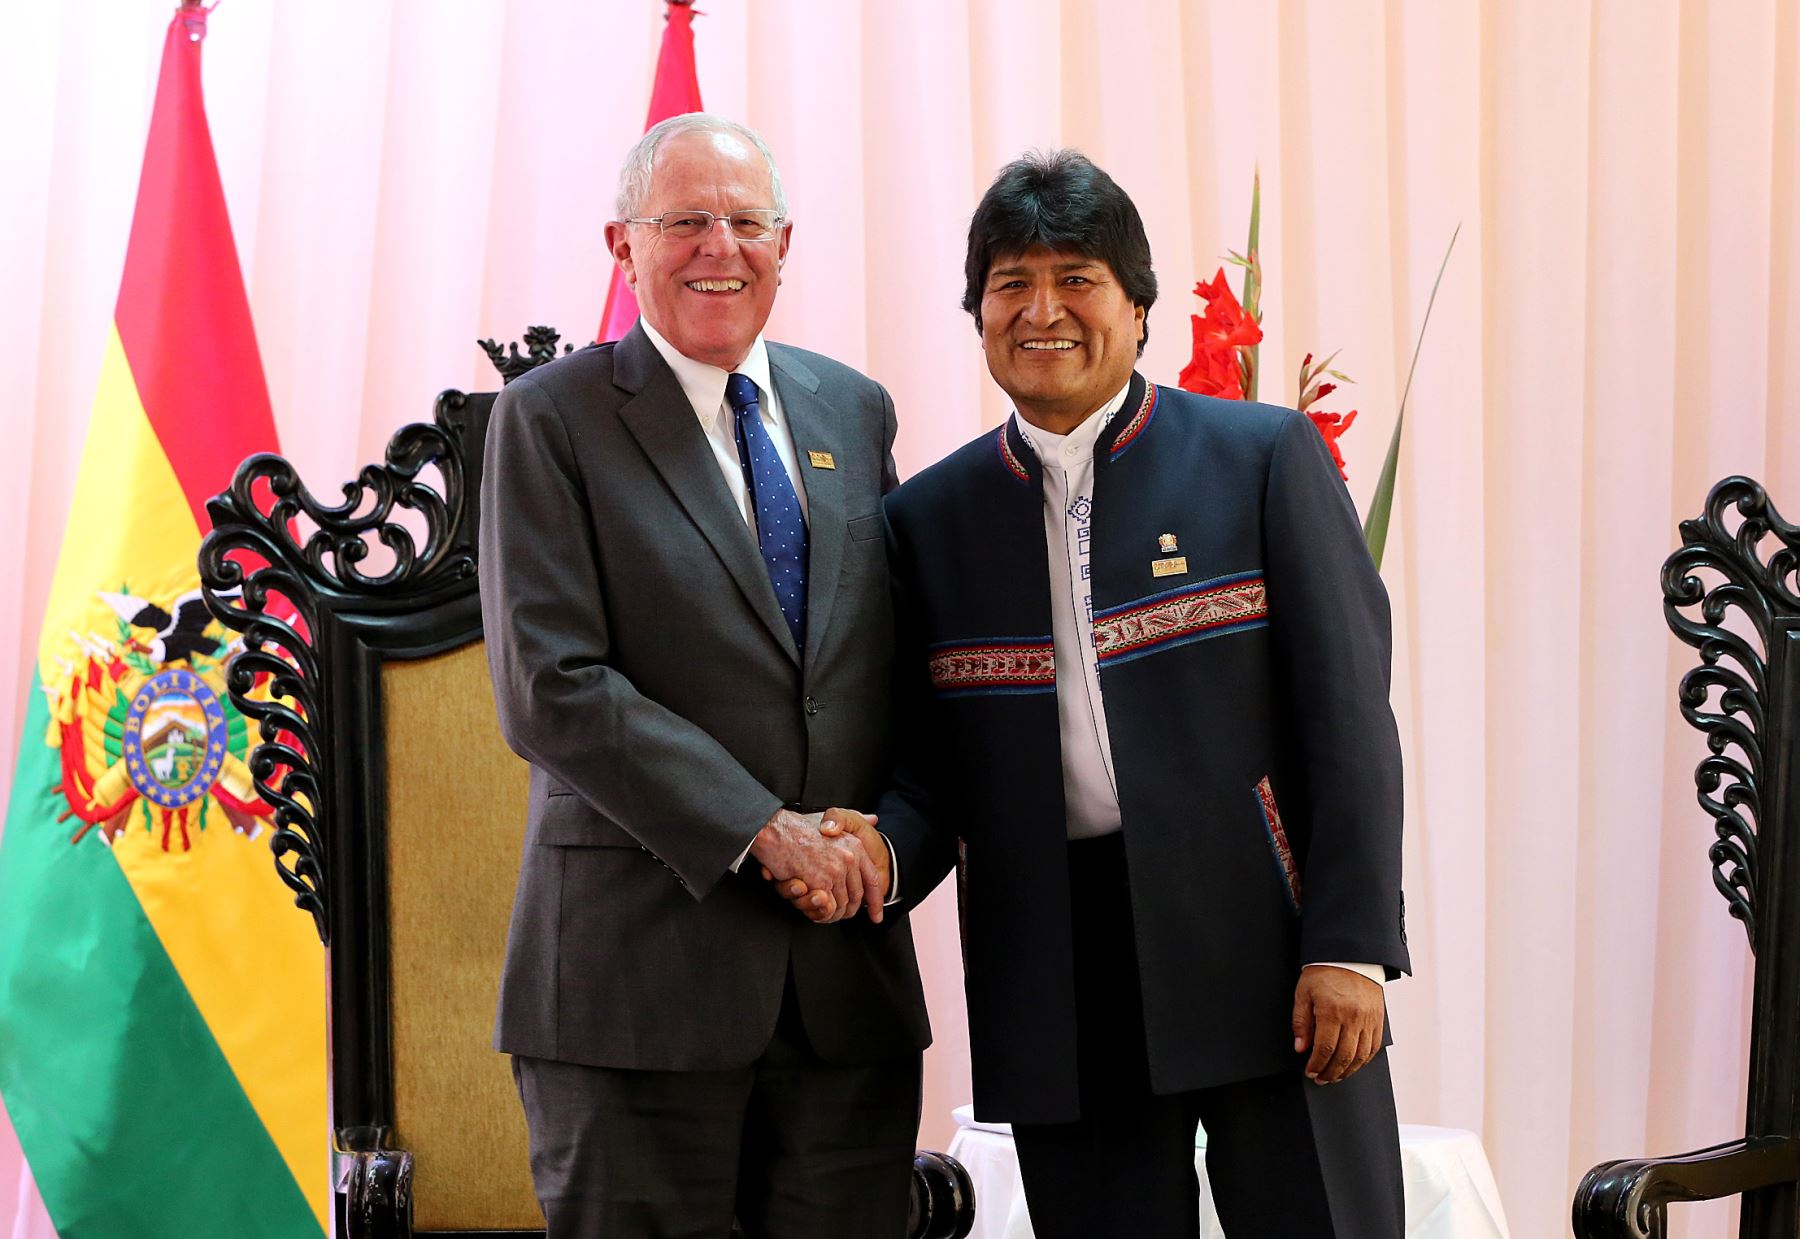 نشست مشترک کابینه دولتهای پرو و بولیوی با حضور رئیسان جمهوری دو کشور